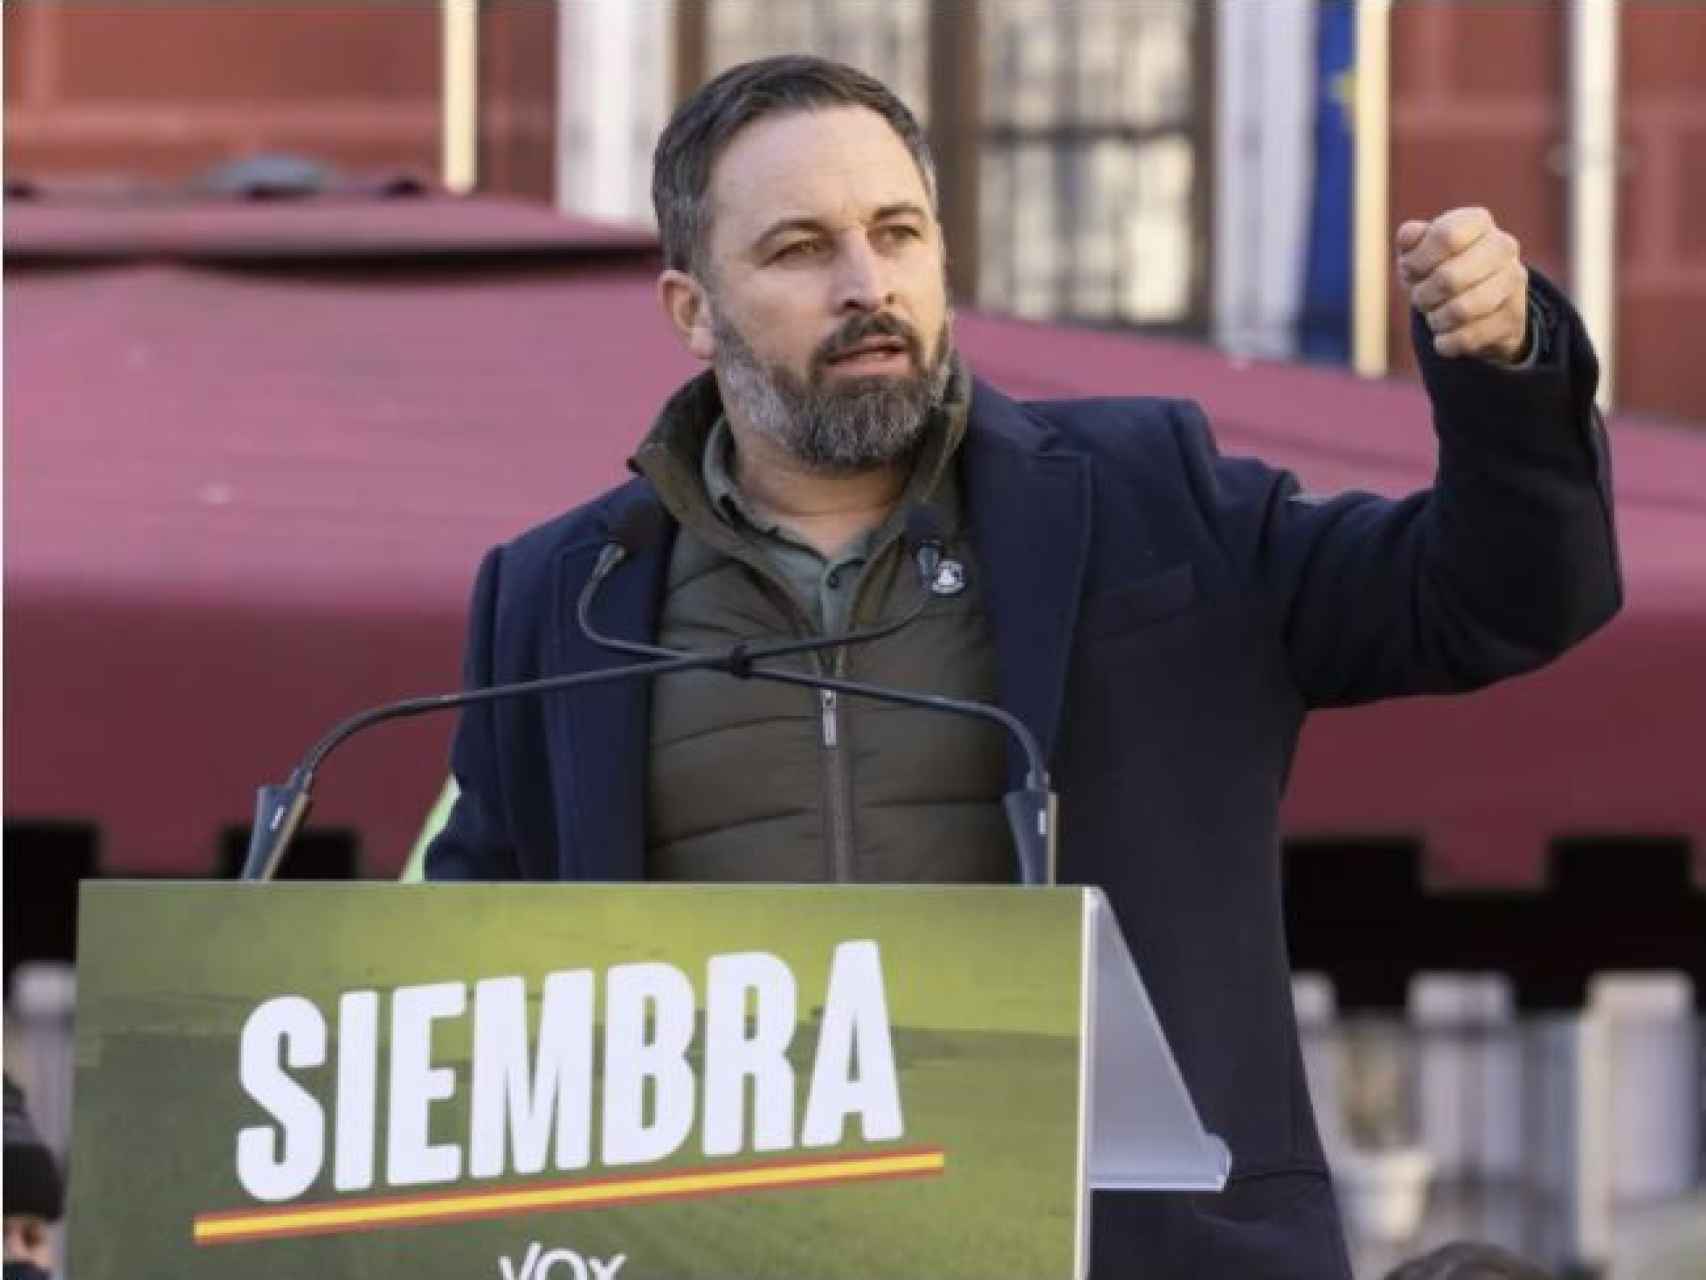 Santiago Abascal, durante la pasada campaña electoral en Valladolid